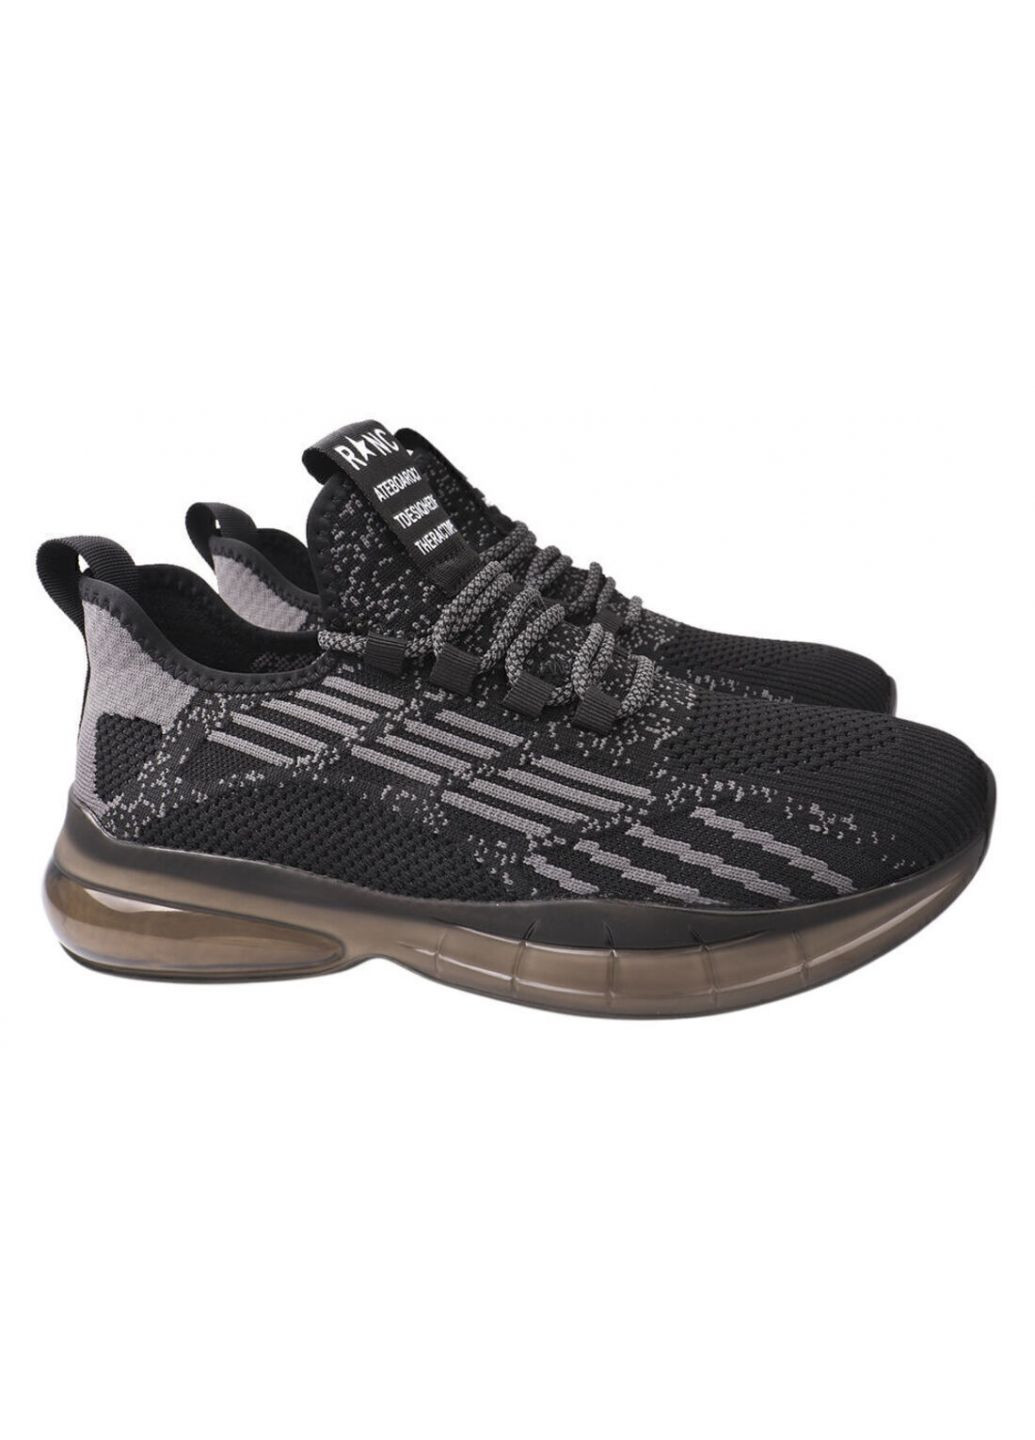 Чорні кросівки чоловічі з текстилю, на низькому ходу, на шнурівці, чорні, Lifexpert 603-21DK